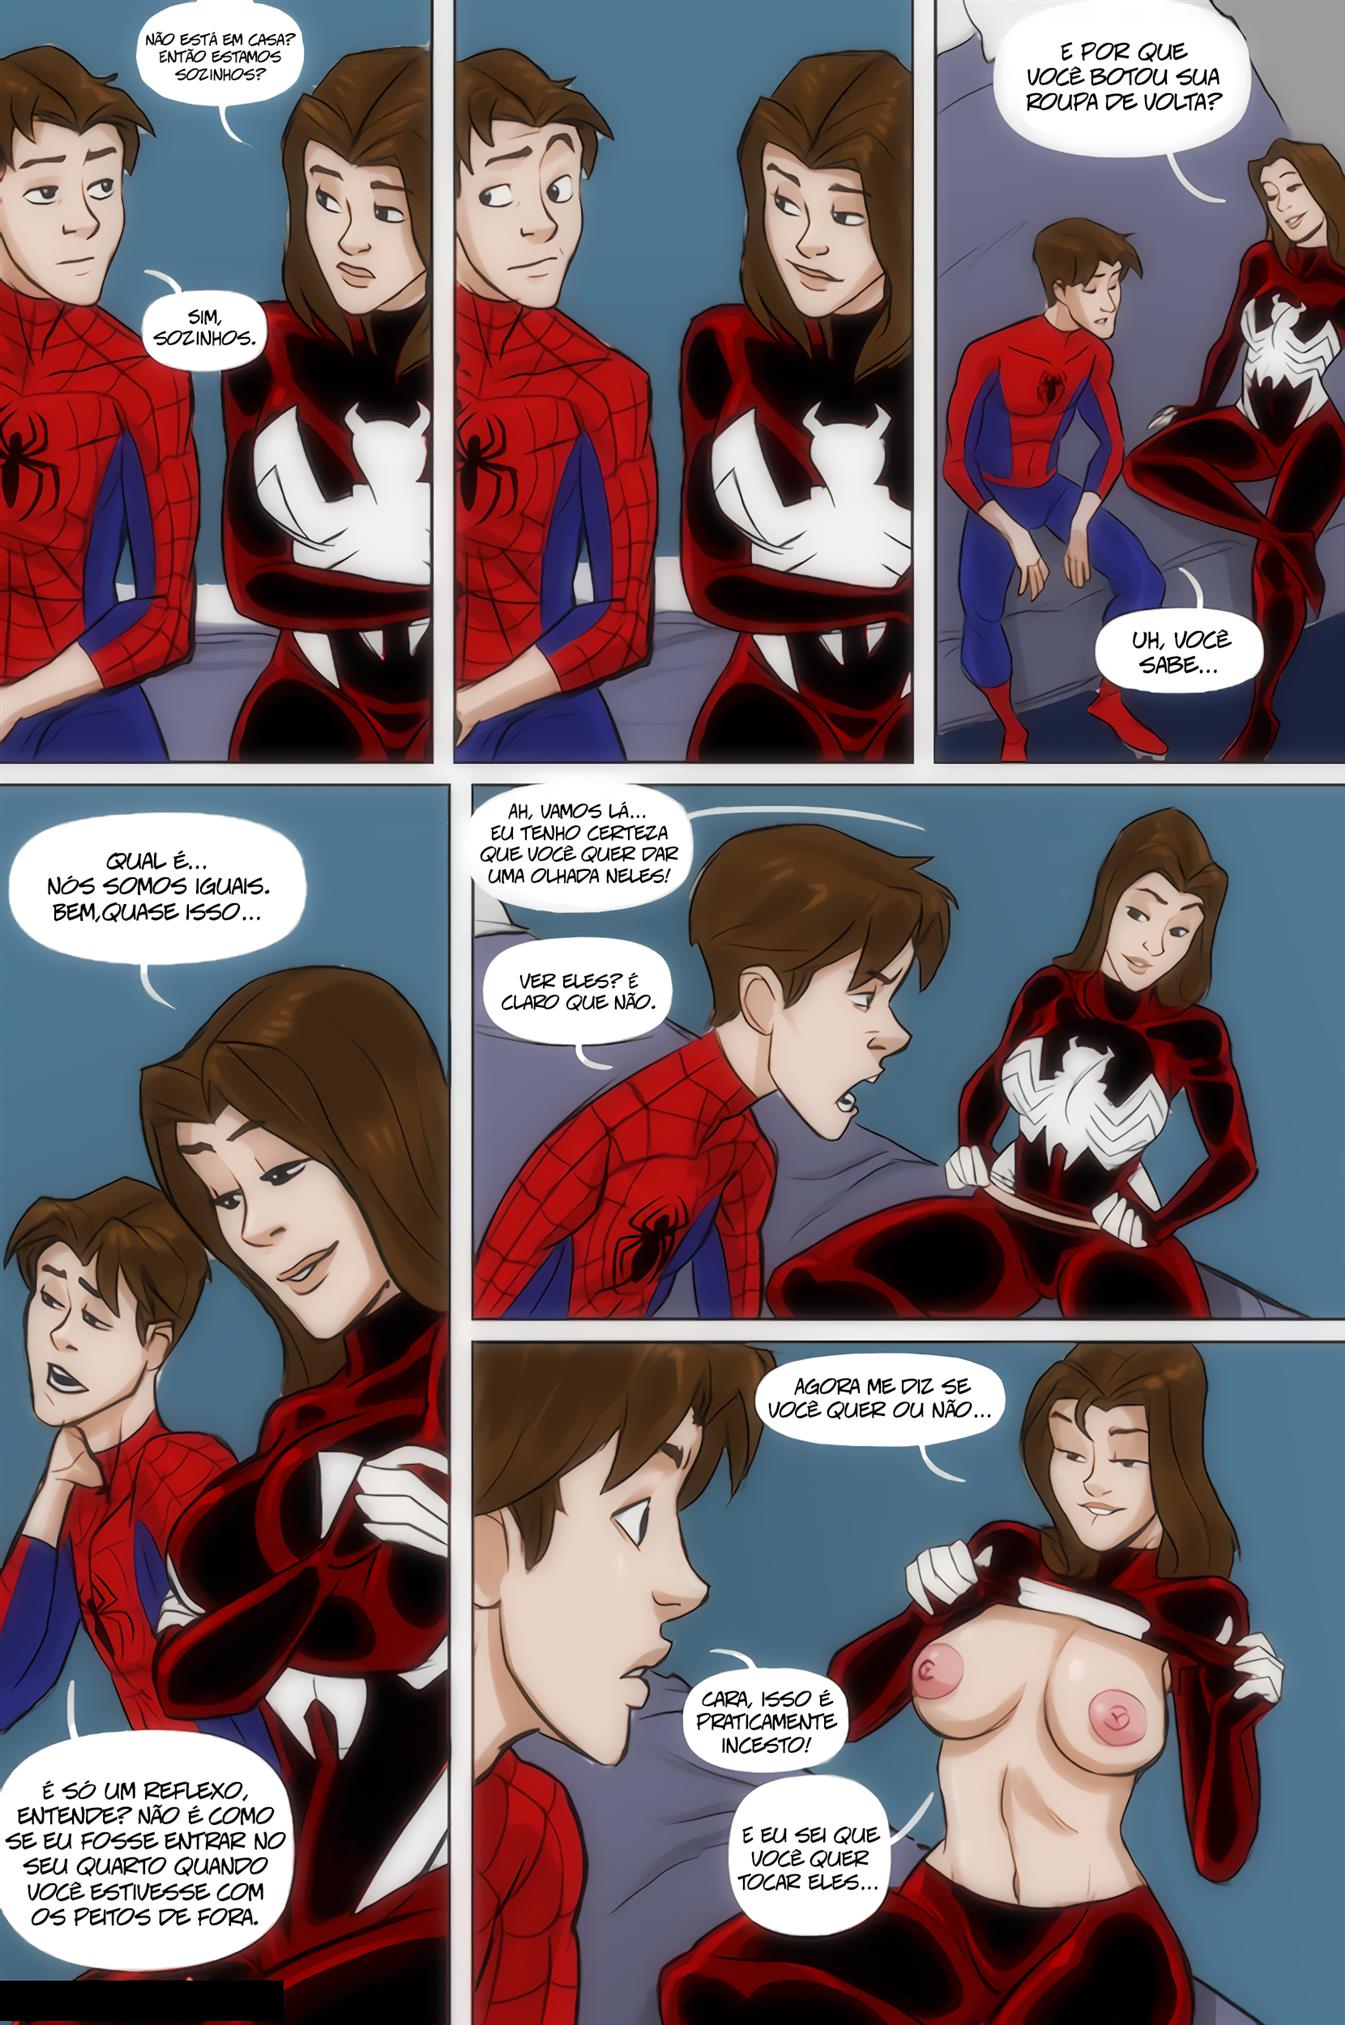 Ver comics porn - Marvel Hentai do Incesto Aranha